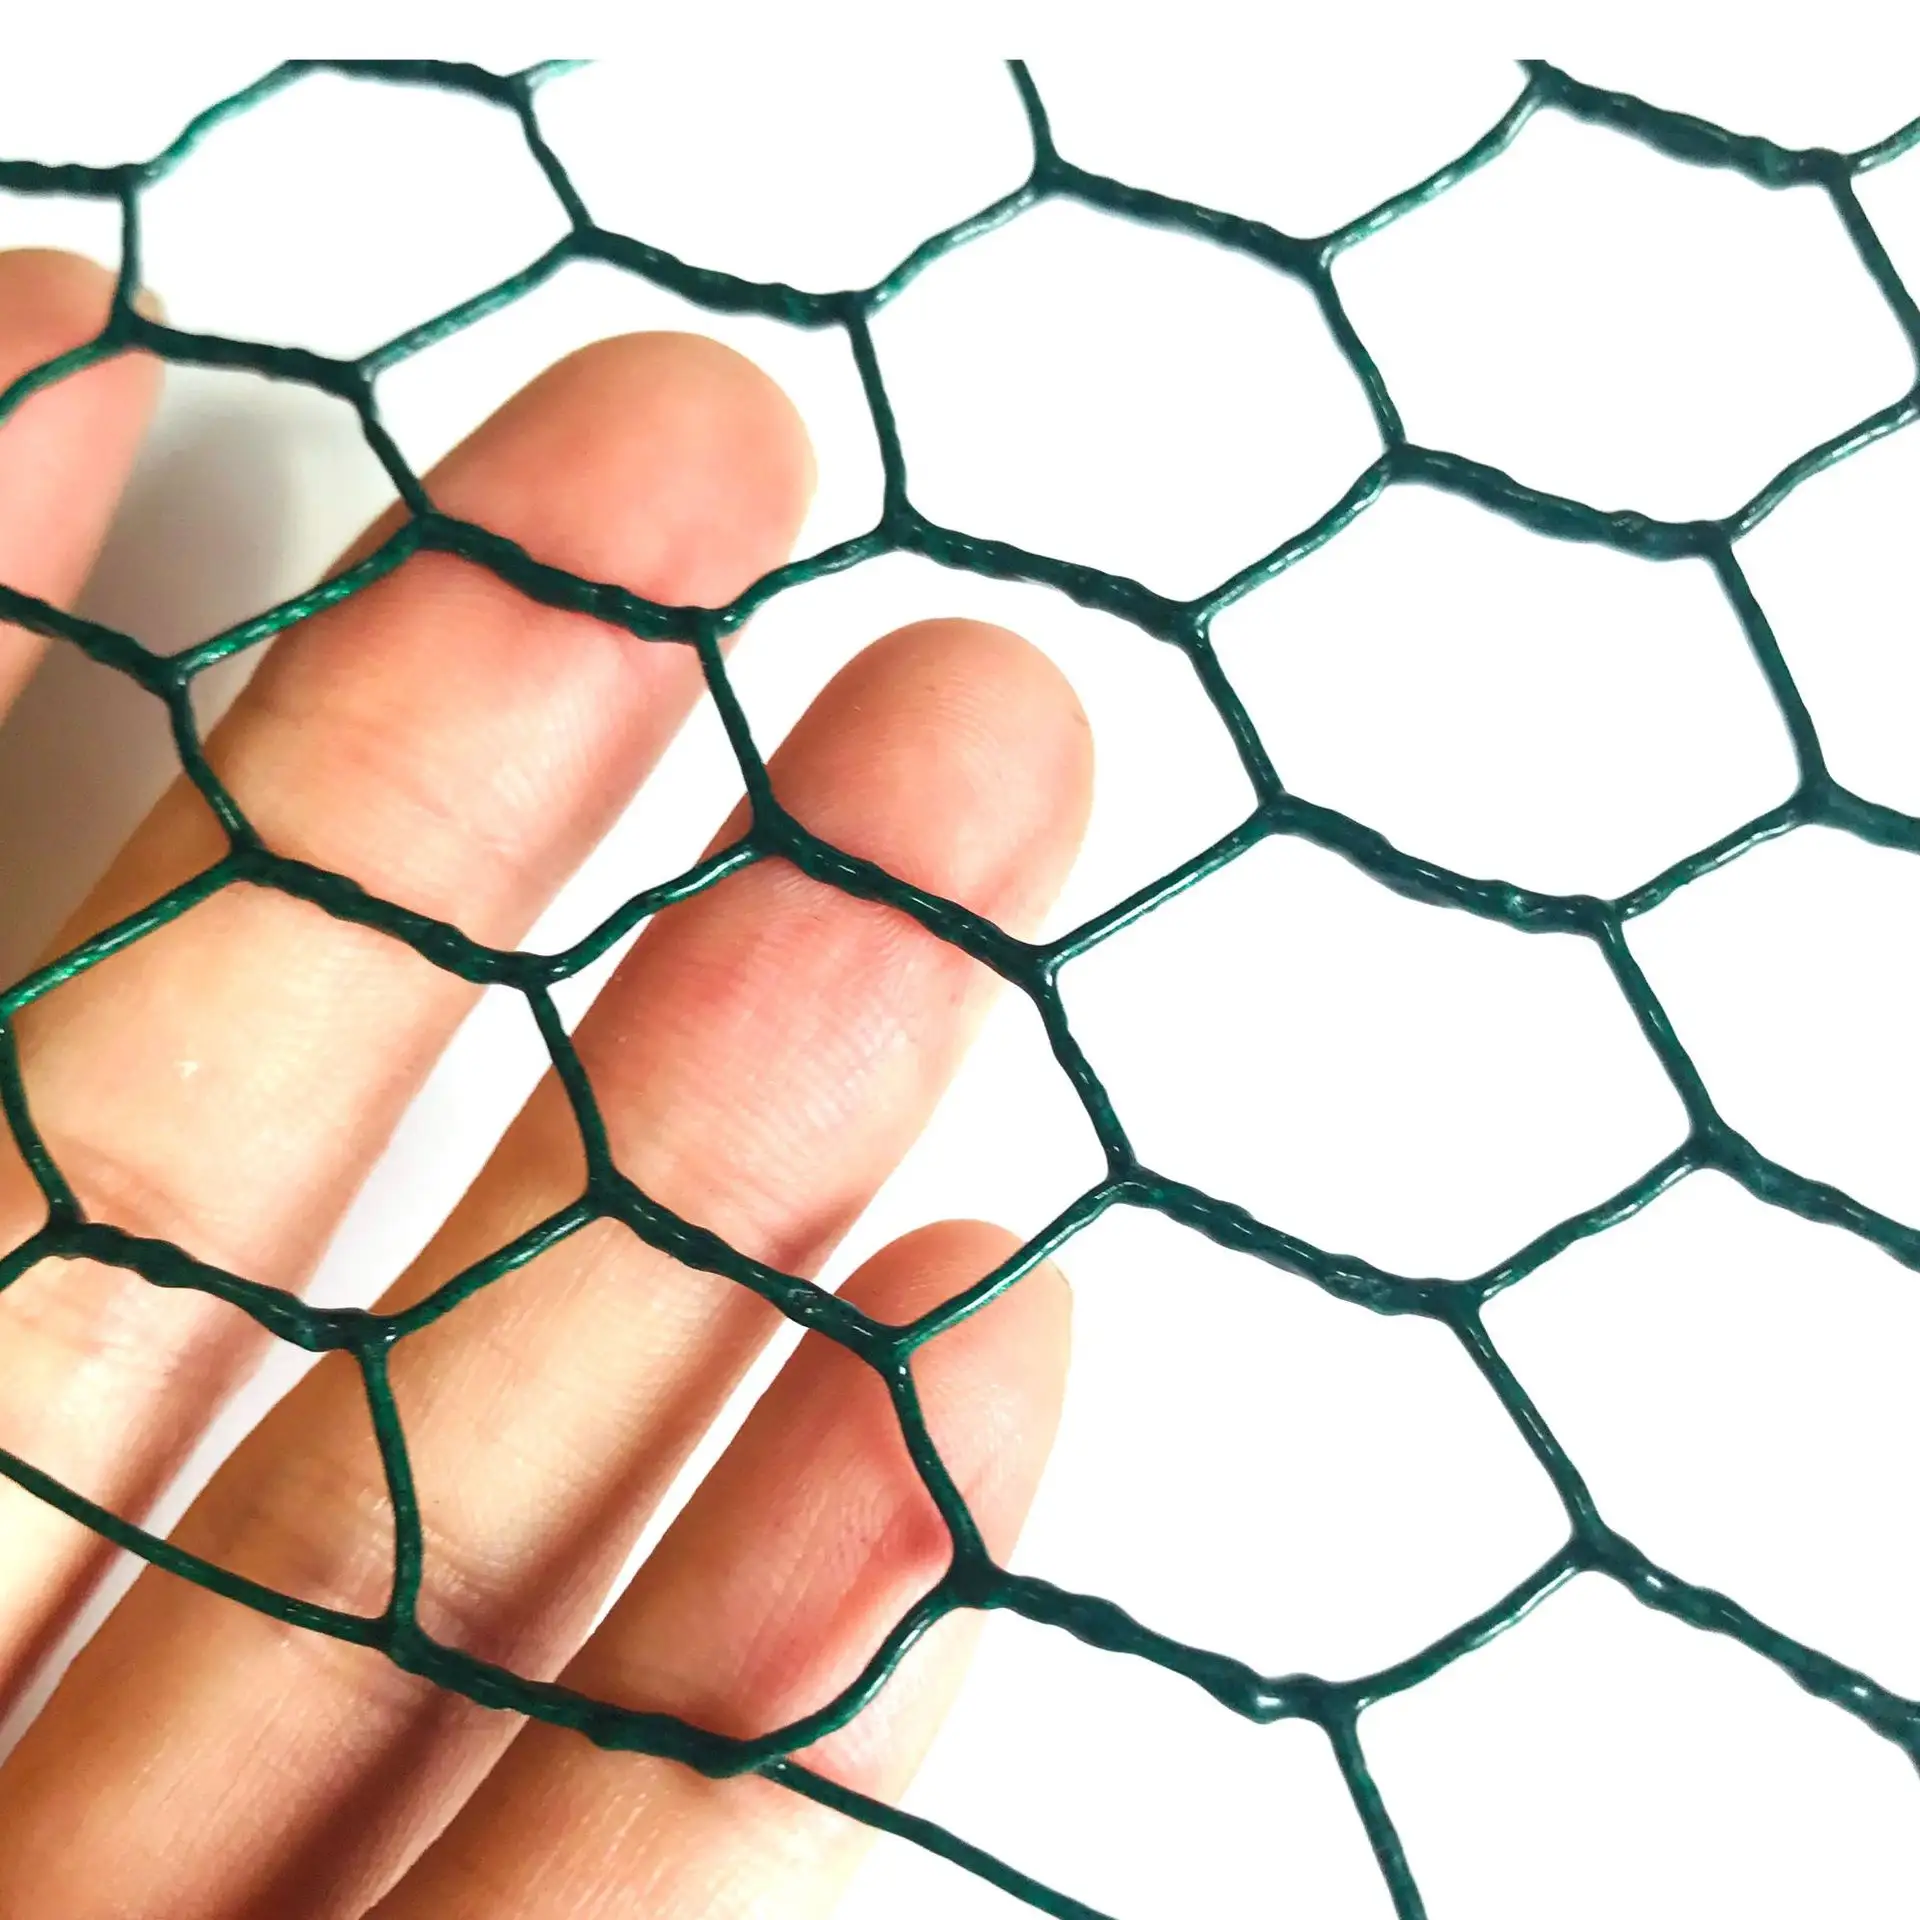 Malla de alambre hexagonal de red de jaula de pollo de plástico recubierto de revestimiento verde